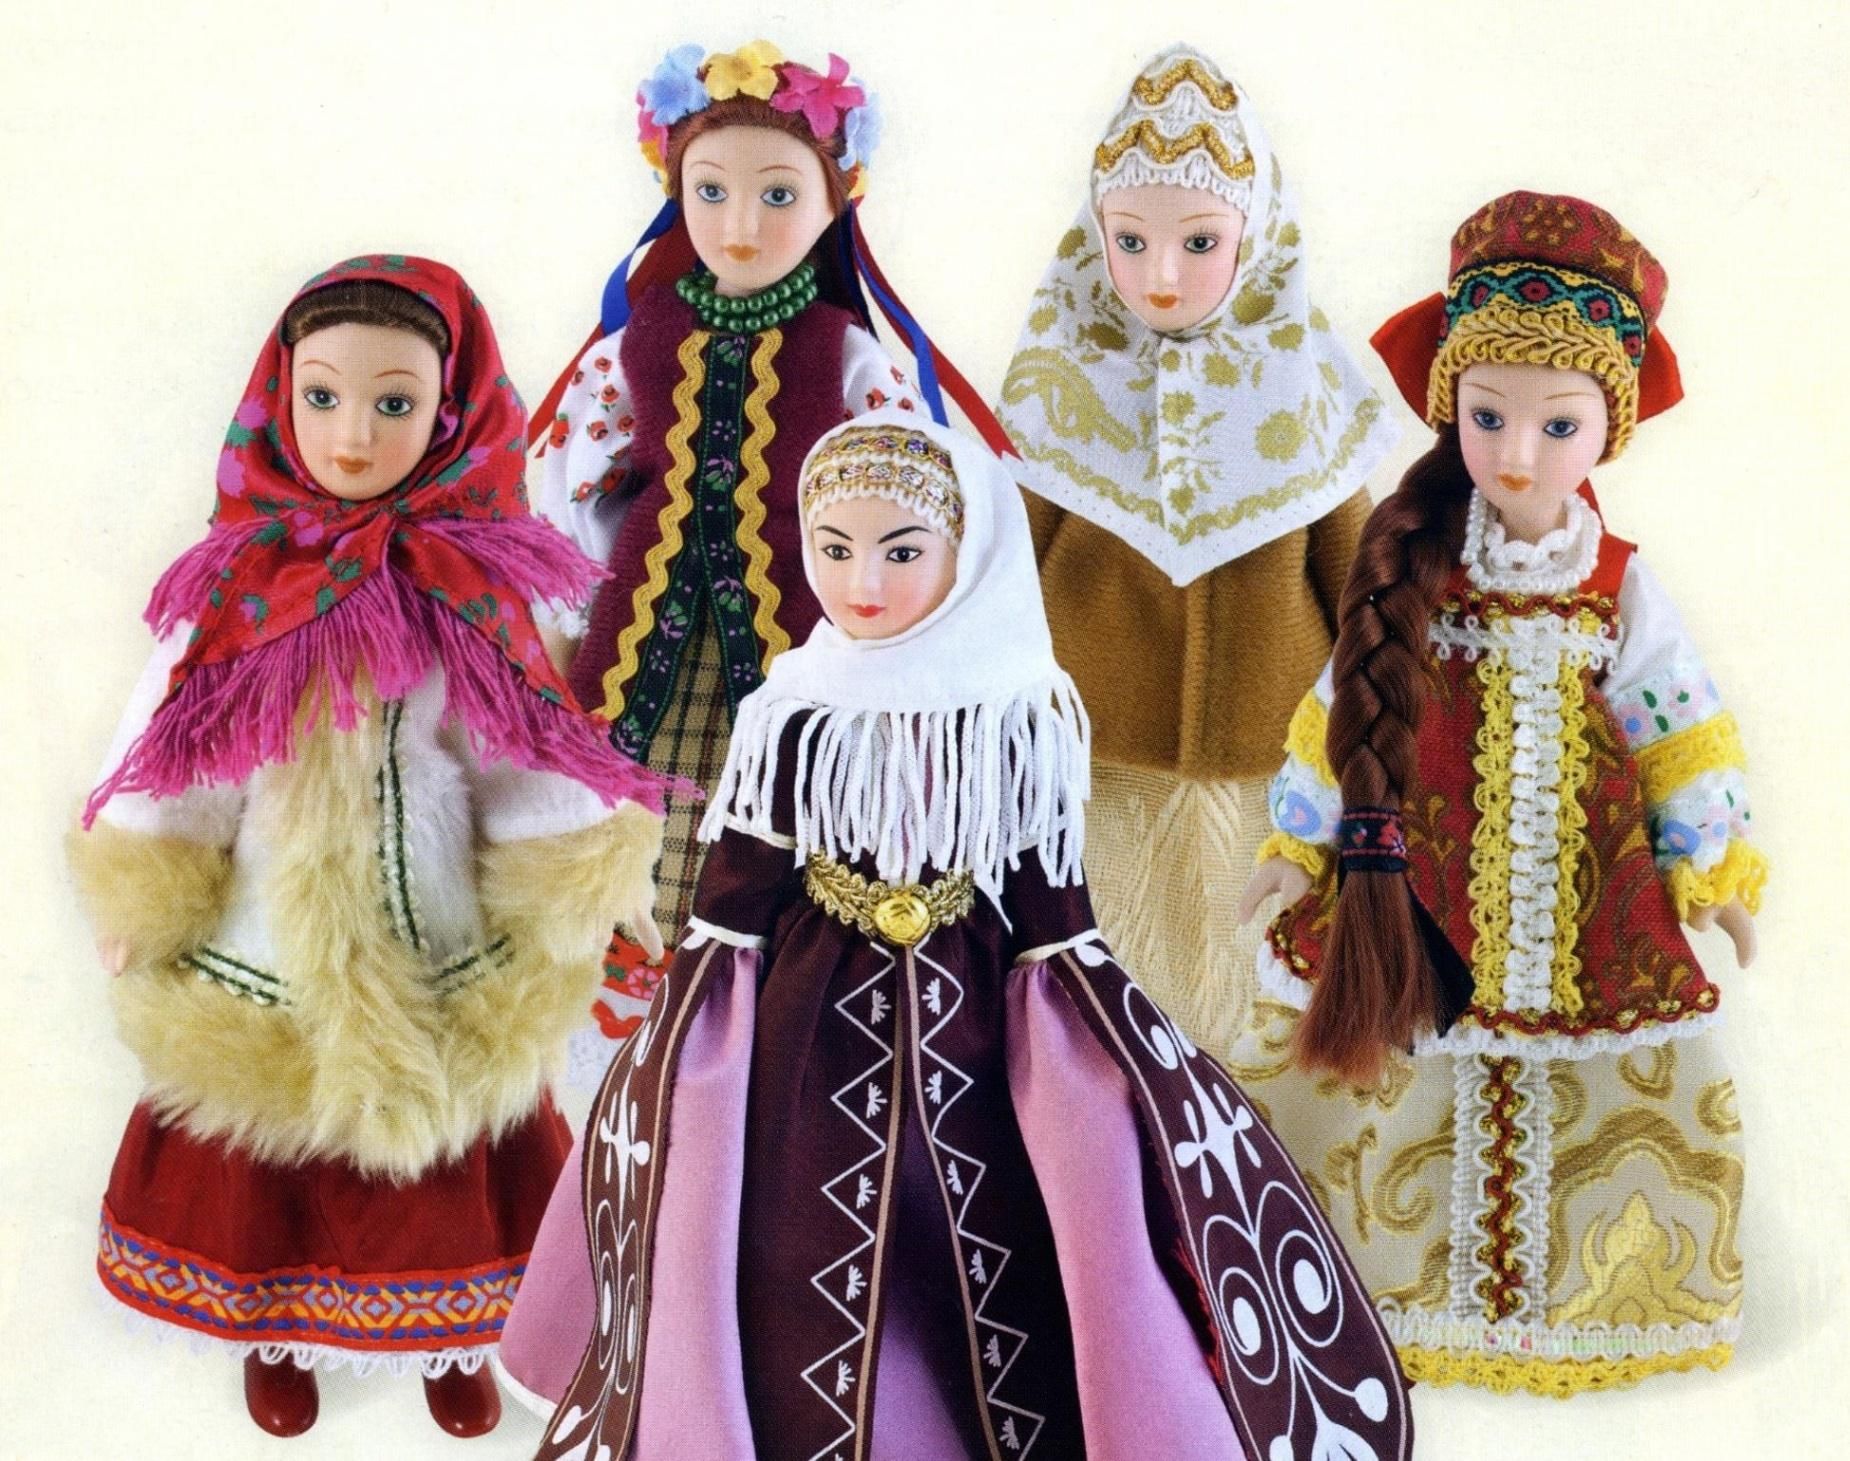 Купить кукол в национальных костюмах. Куклы в национальных костюмах. Куклы в национальной одежде. Кукла в народном костюме. Фарфоровые куклы в национальных костюмах.